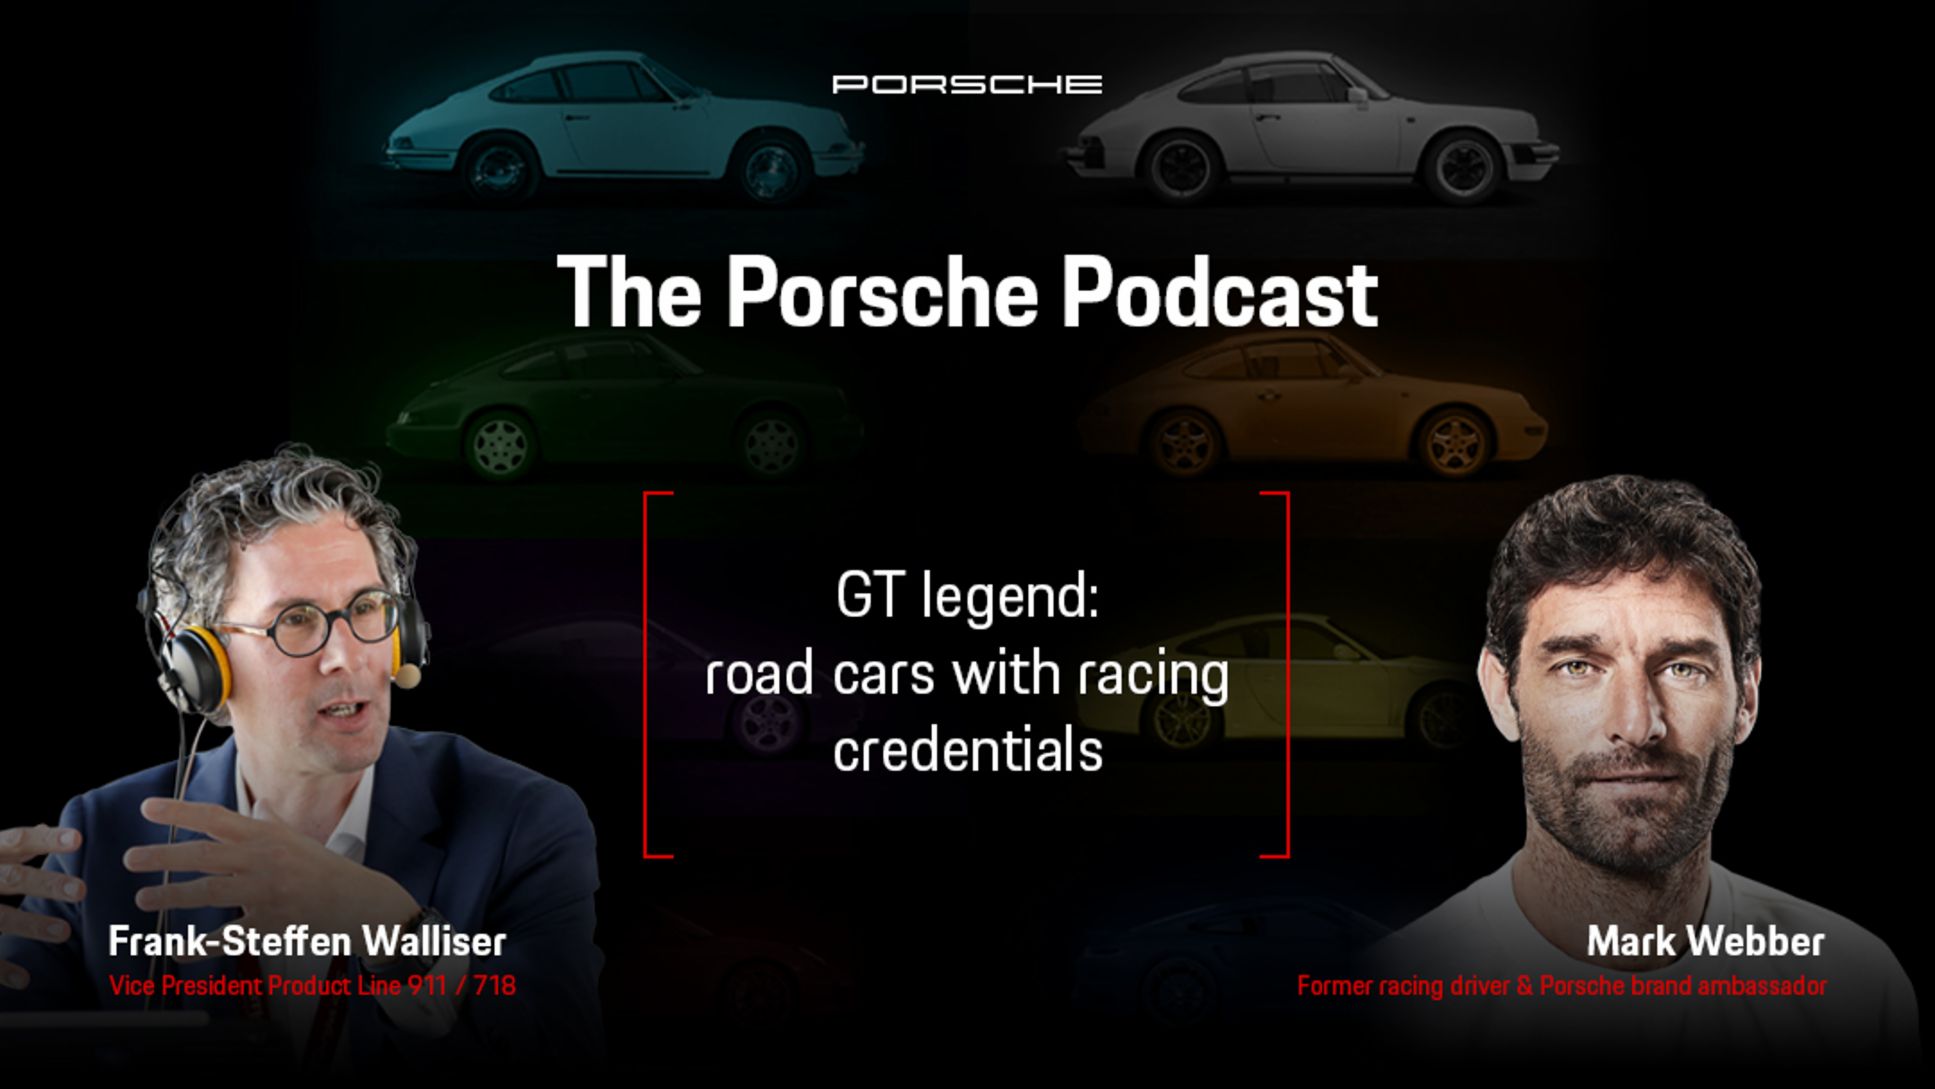 Frank-Steffen Walliser, Vice President Product Line 911 / 718, Mark Webber, Porsche Brand Ambassador, l-r, The Porsche Podcast, episode 2, 2021, Porsche AG